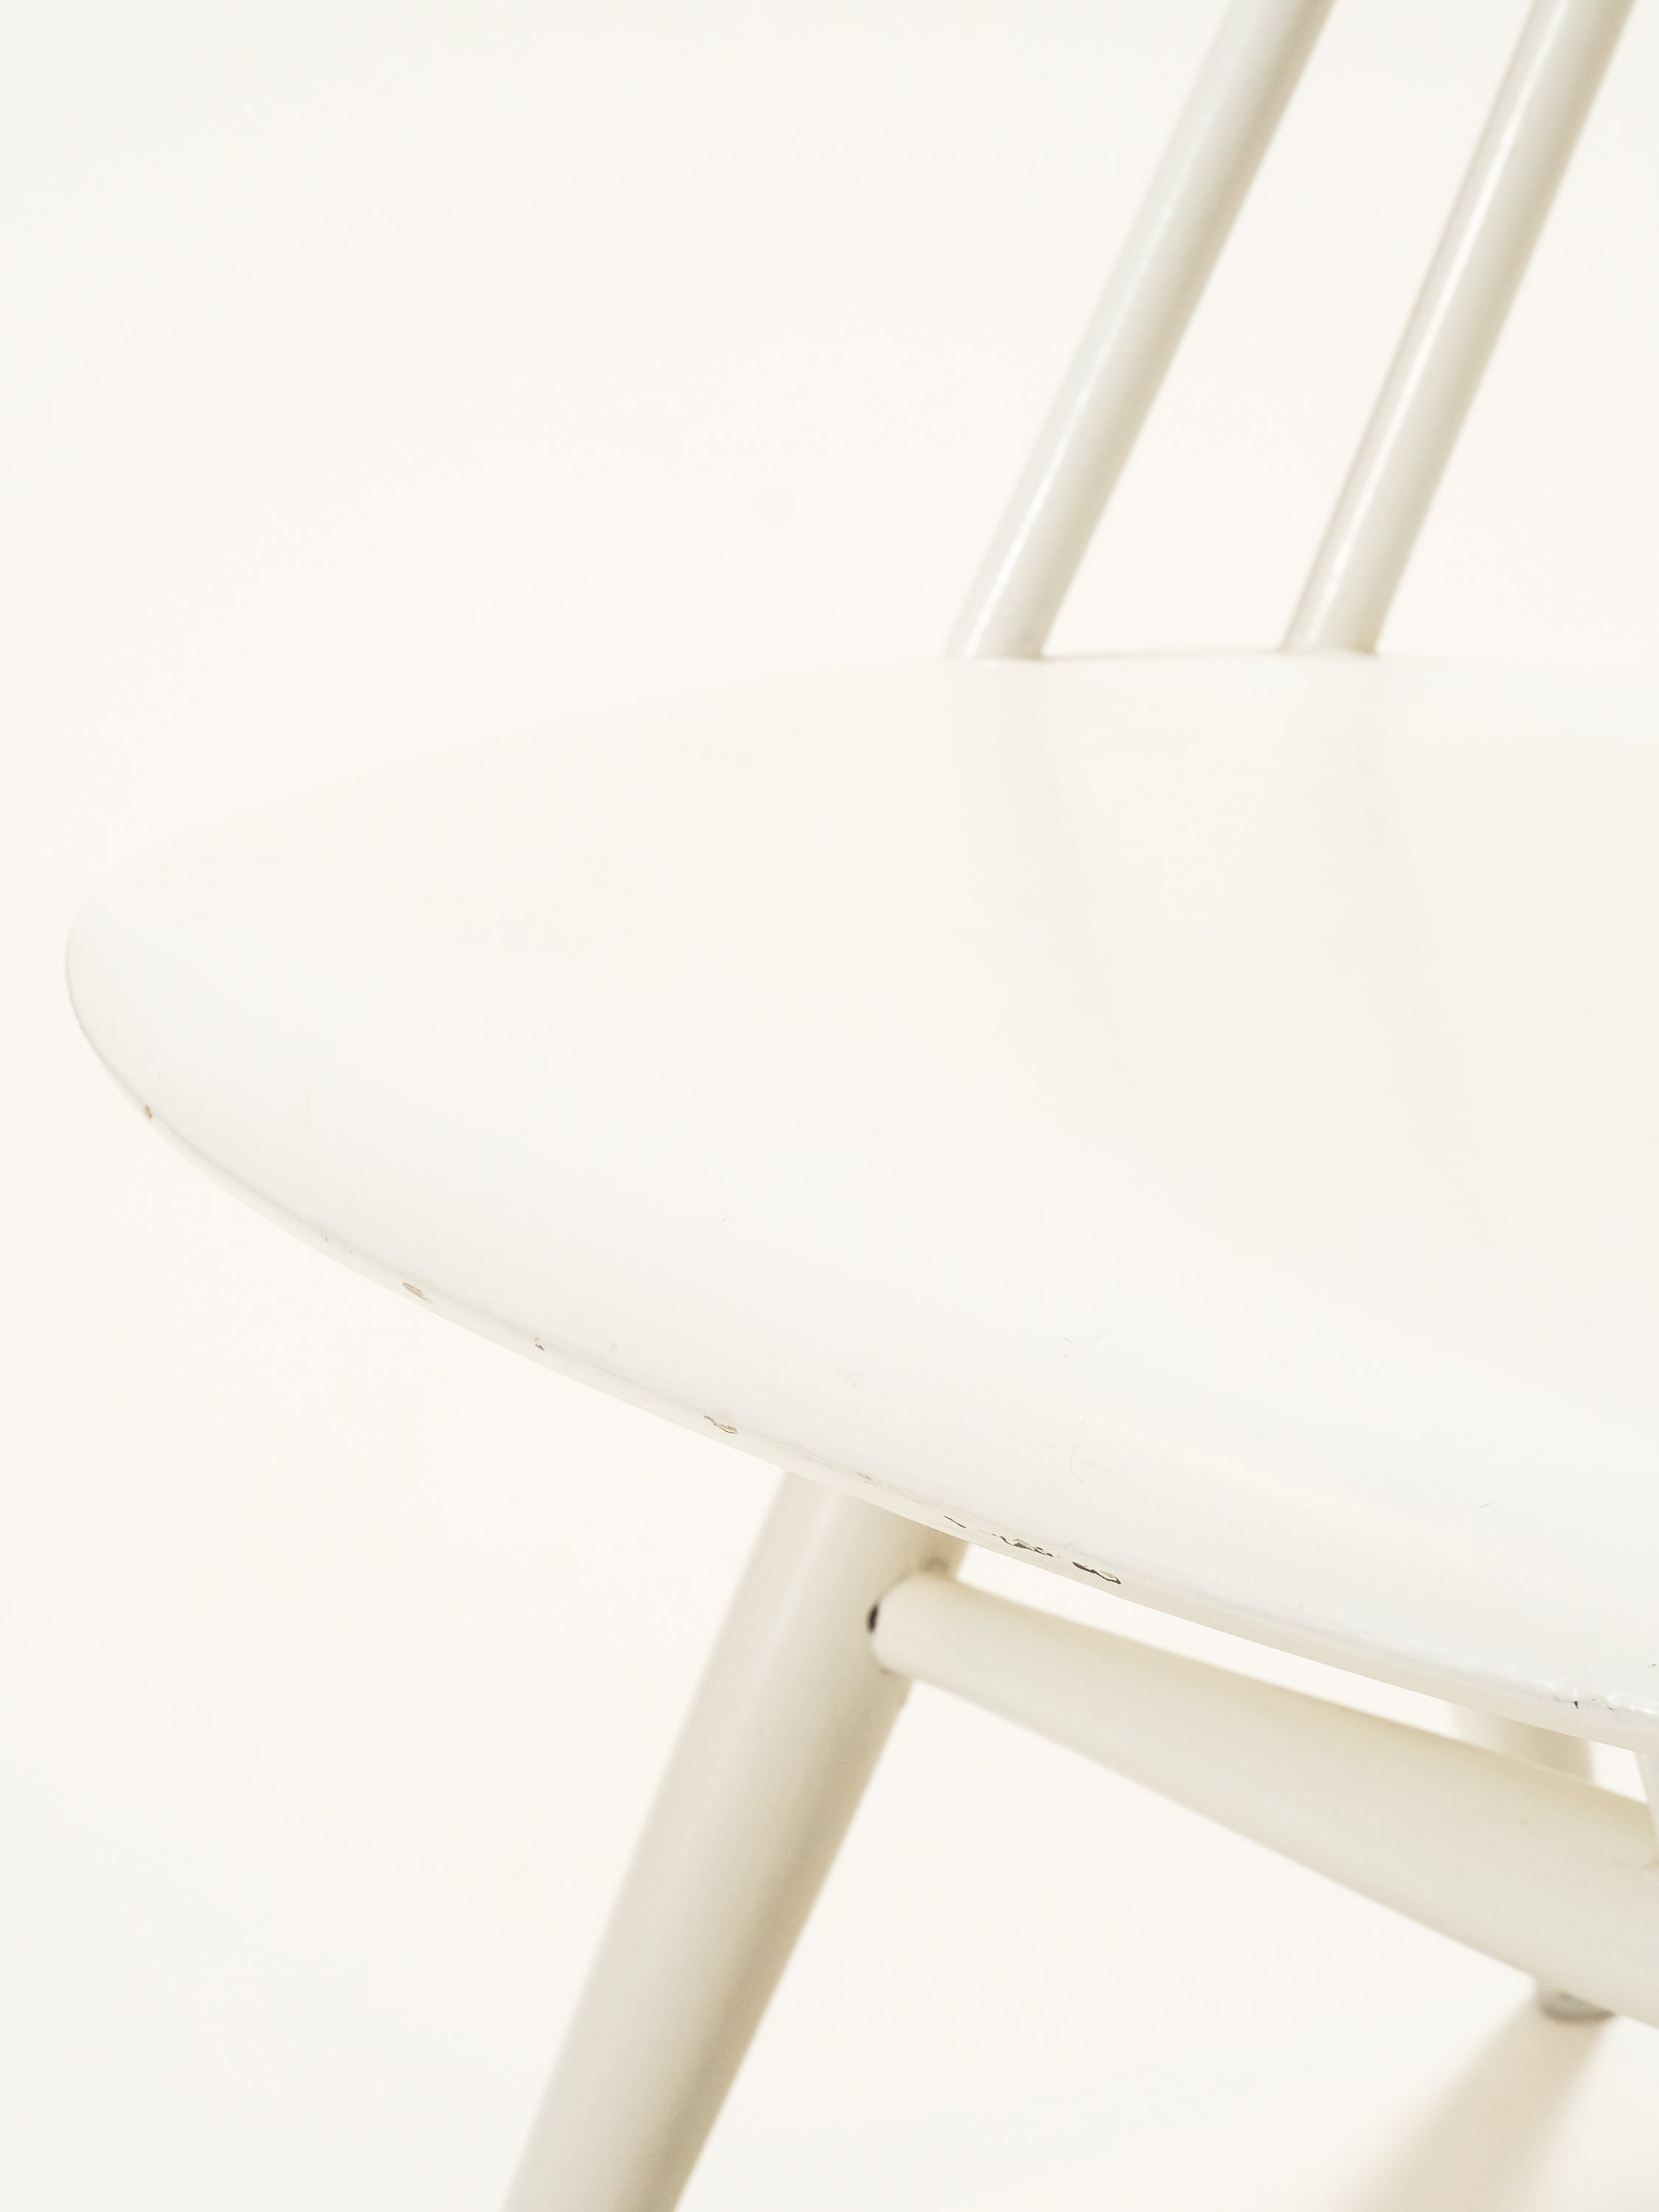 Mid-Century White "Mademoiselle" Chair by Ilmari Tapiovaara